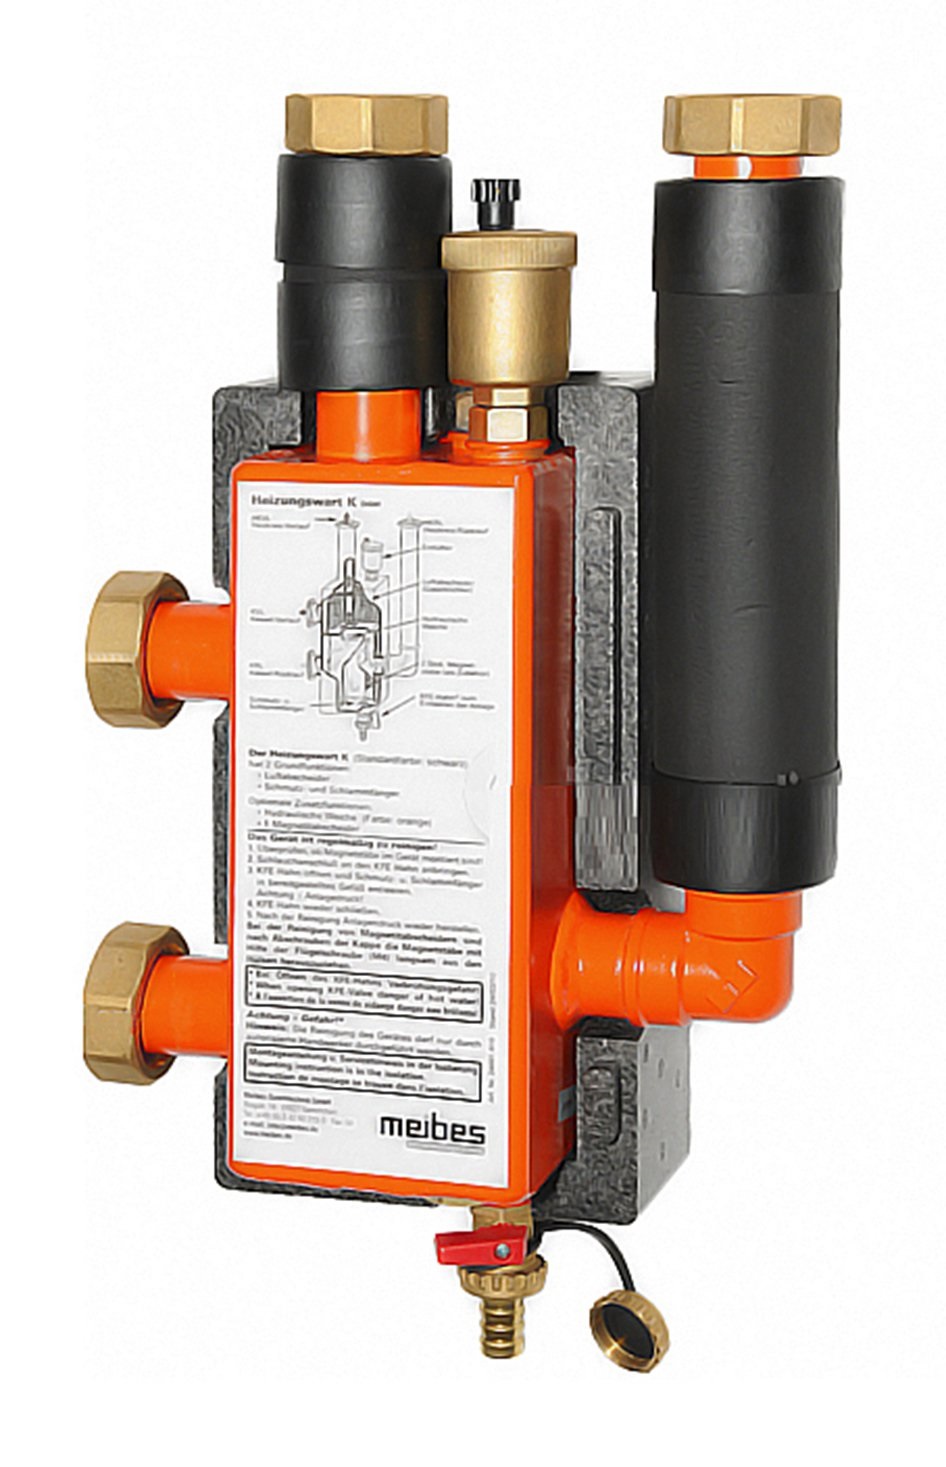 Гидравлическая стрелка Meibes MHK DN-25, максимальный расход-2 м3/ч, мощность системы-50 кВт, PN, бар-6, T°C -110 (при 25 °С) (M66391.2RU)